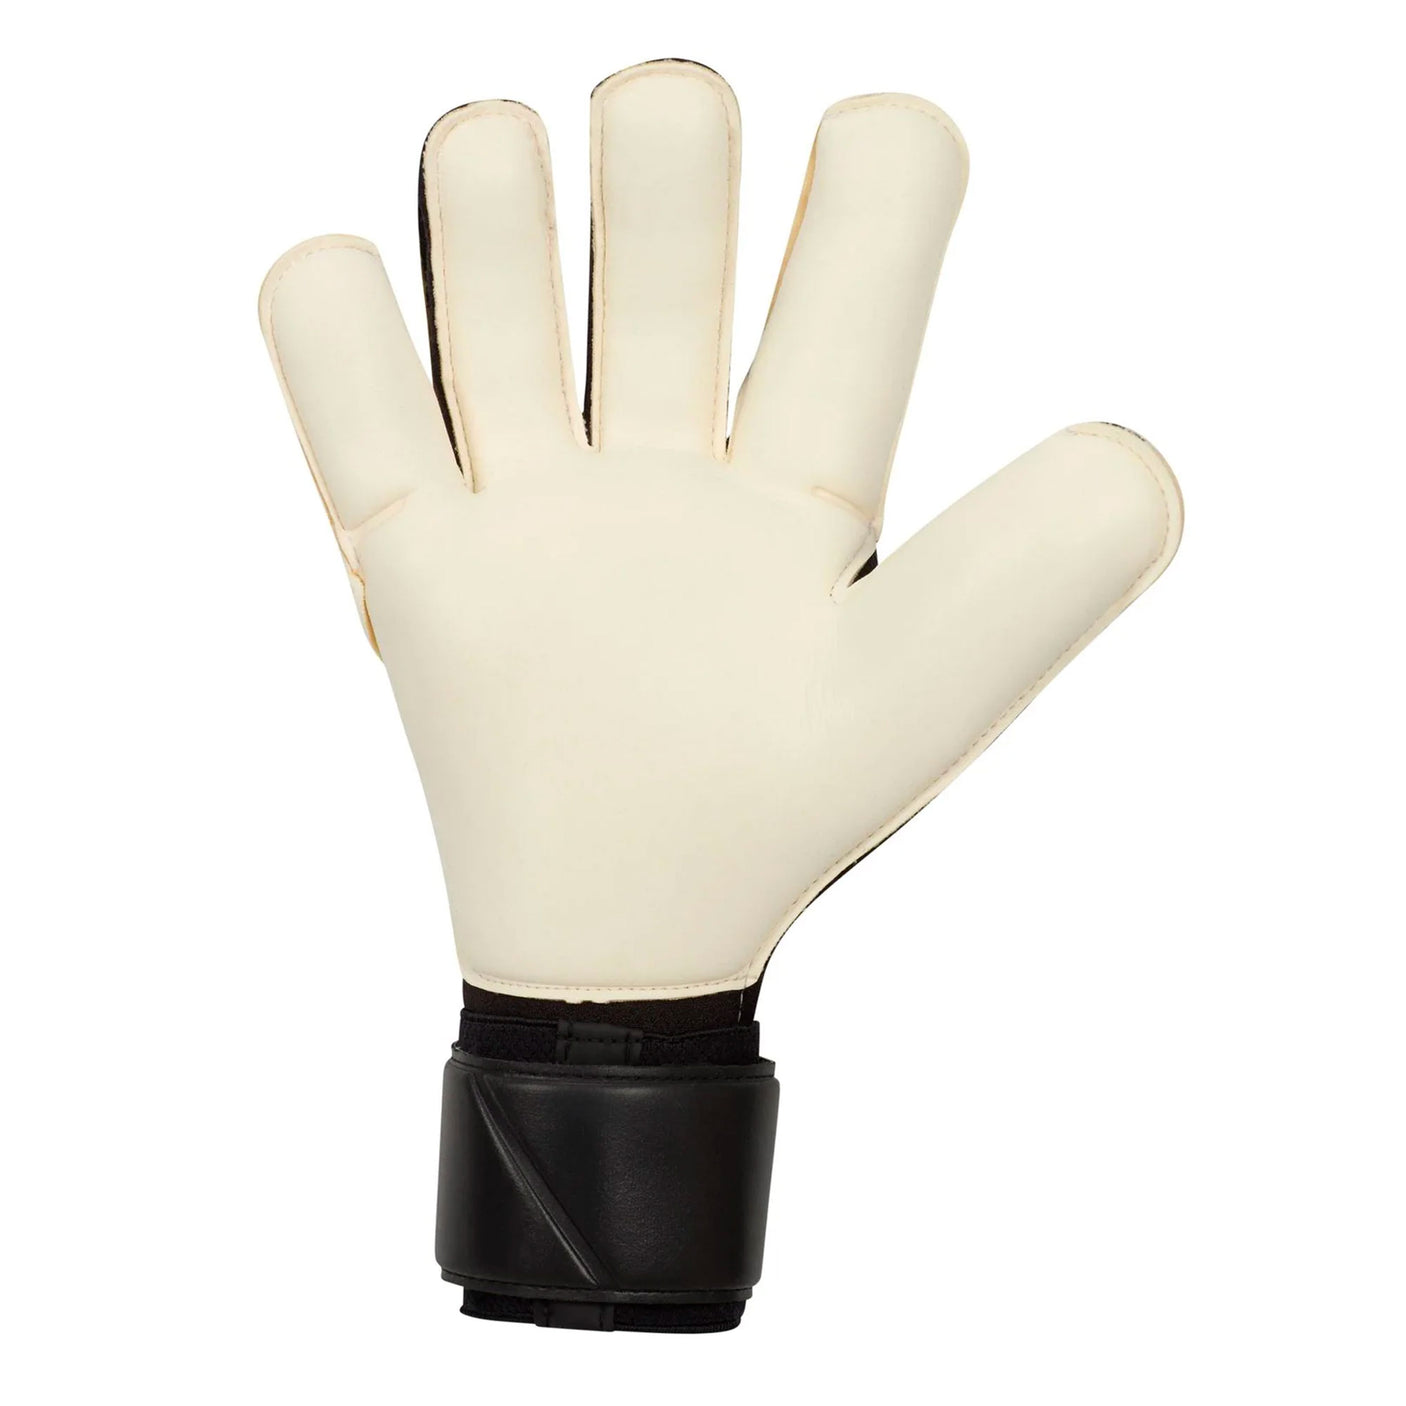 Nike Men's Grip 3 GoalKeeper Gloves Black/Gold/White Back